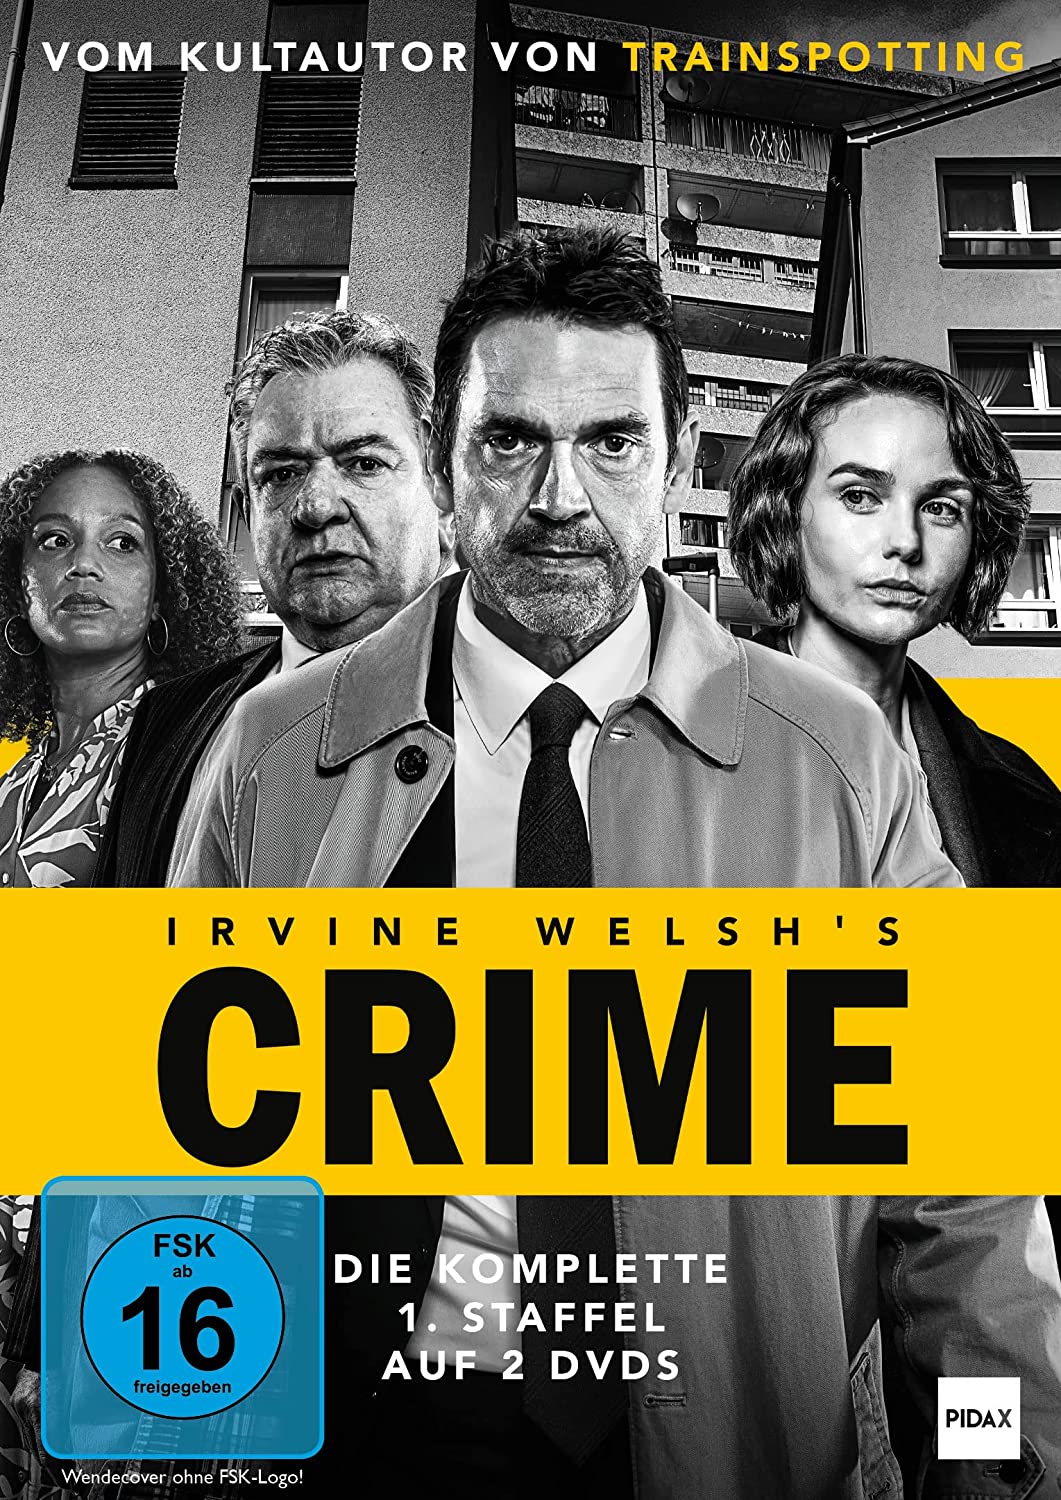 Irvine Welsh's Crime - Komplette 1. Staffel - Krimiserie